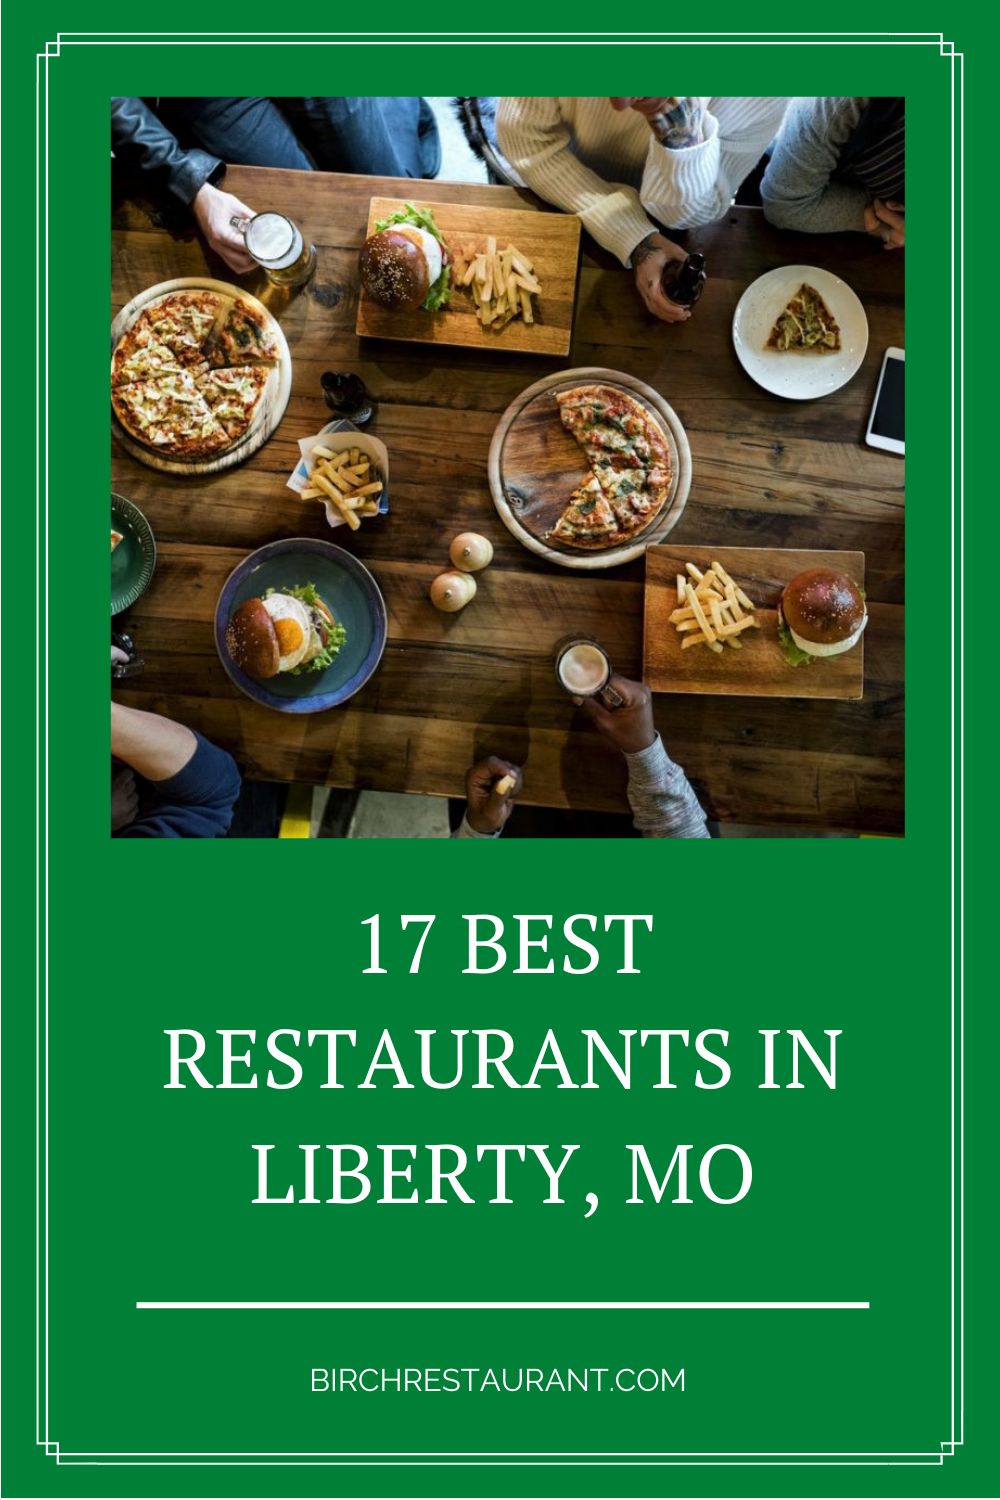 Best Restaurants in Liberty